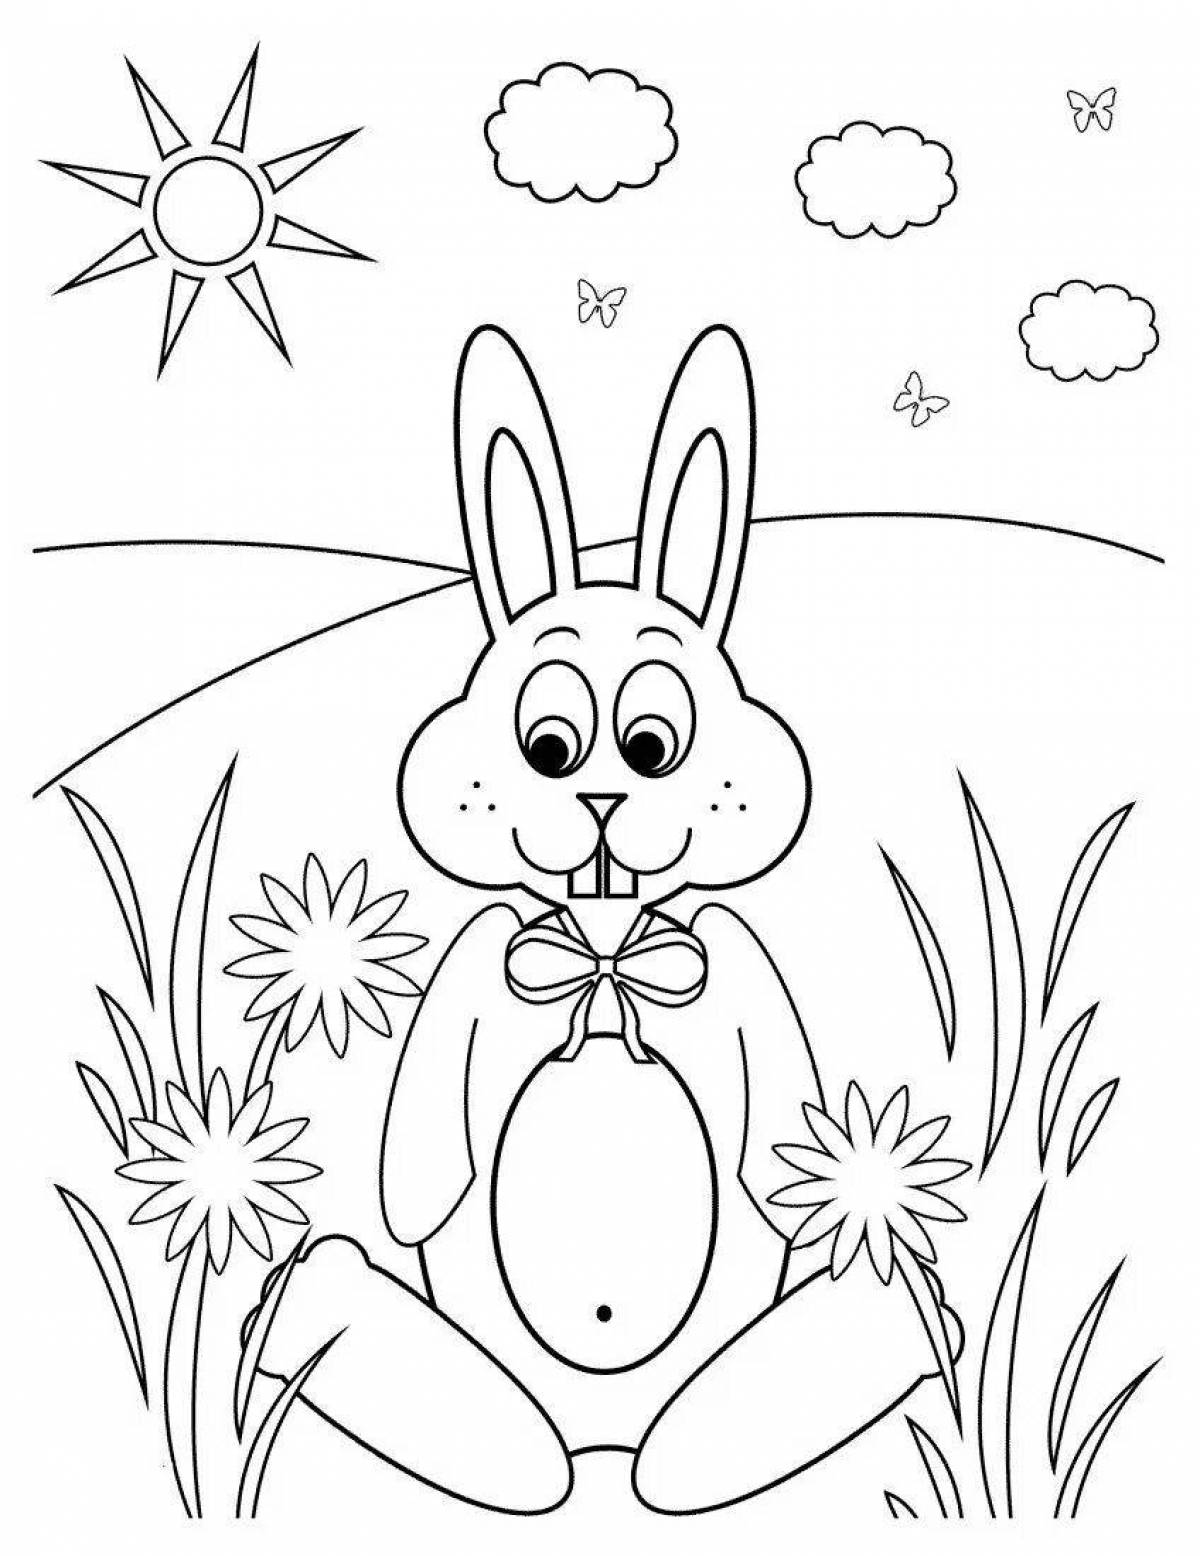 Великолепная раскраска кролика для детей